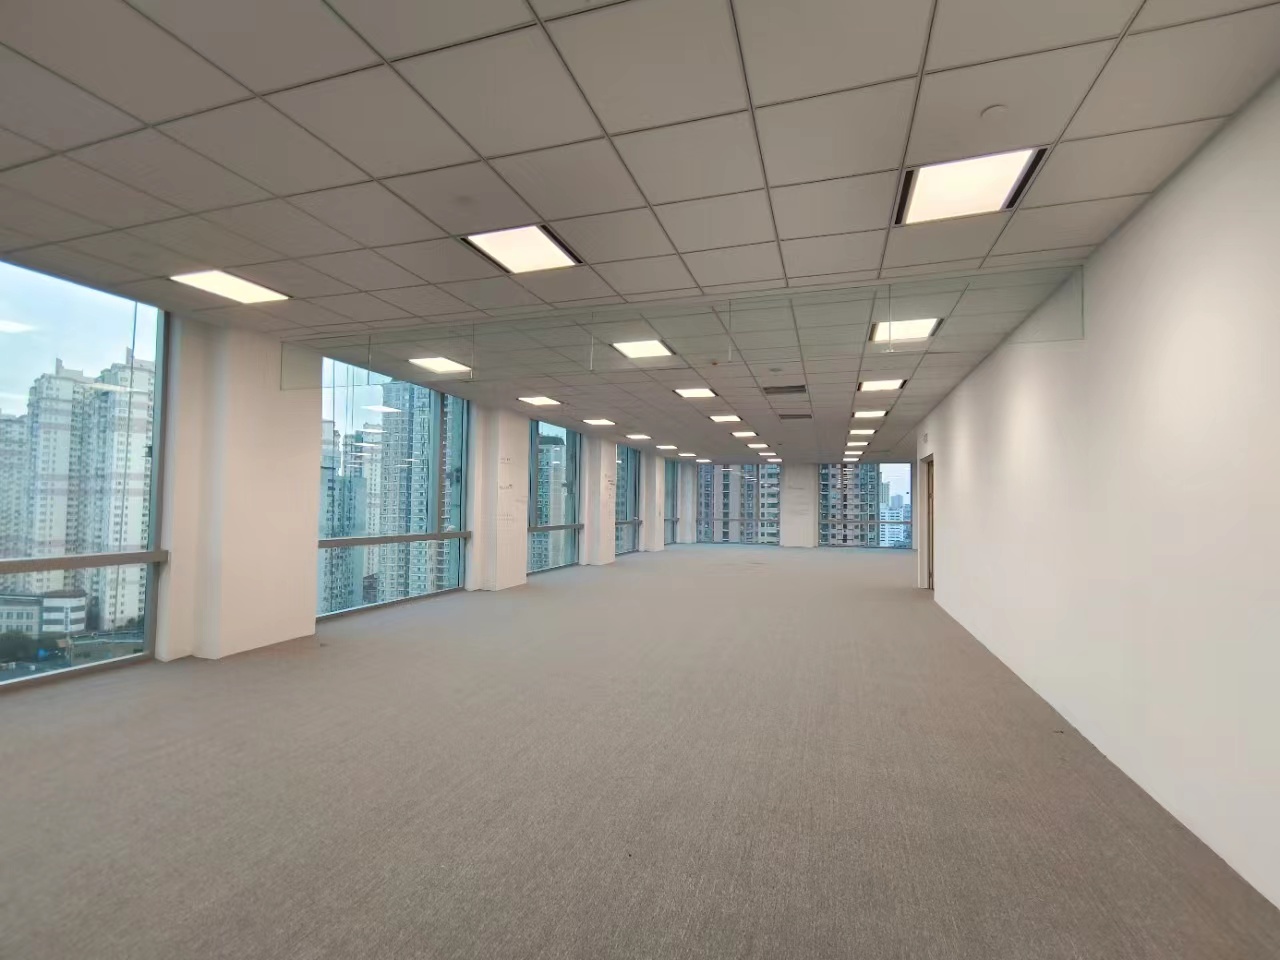 马当路全新甲级写字楼凯德晶萃广场出租2000平整层双地铁现房